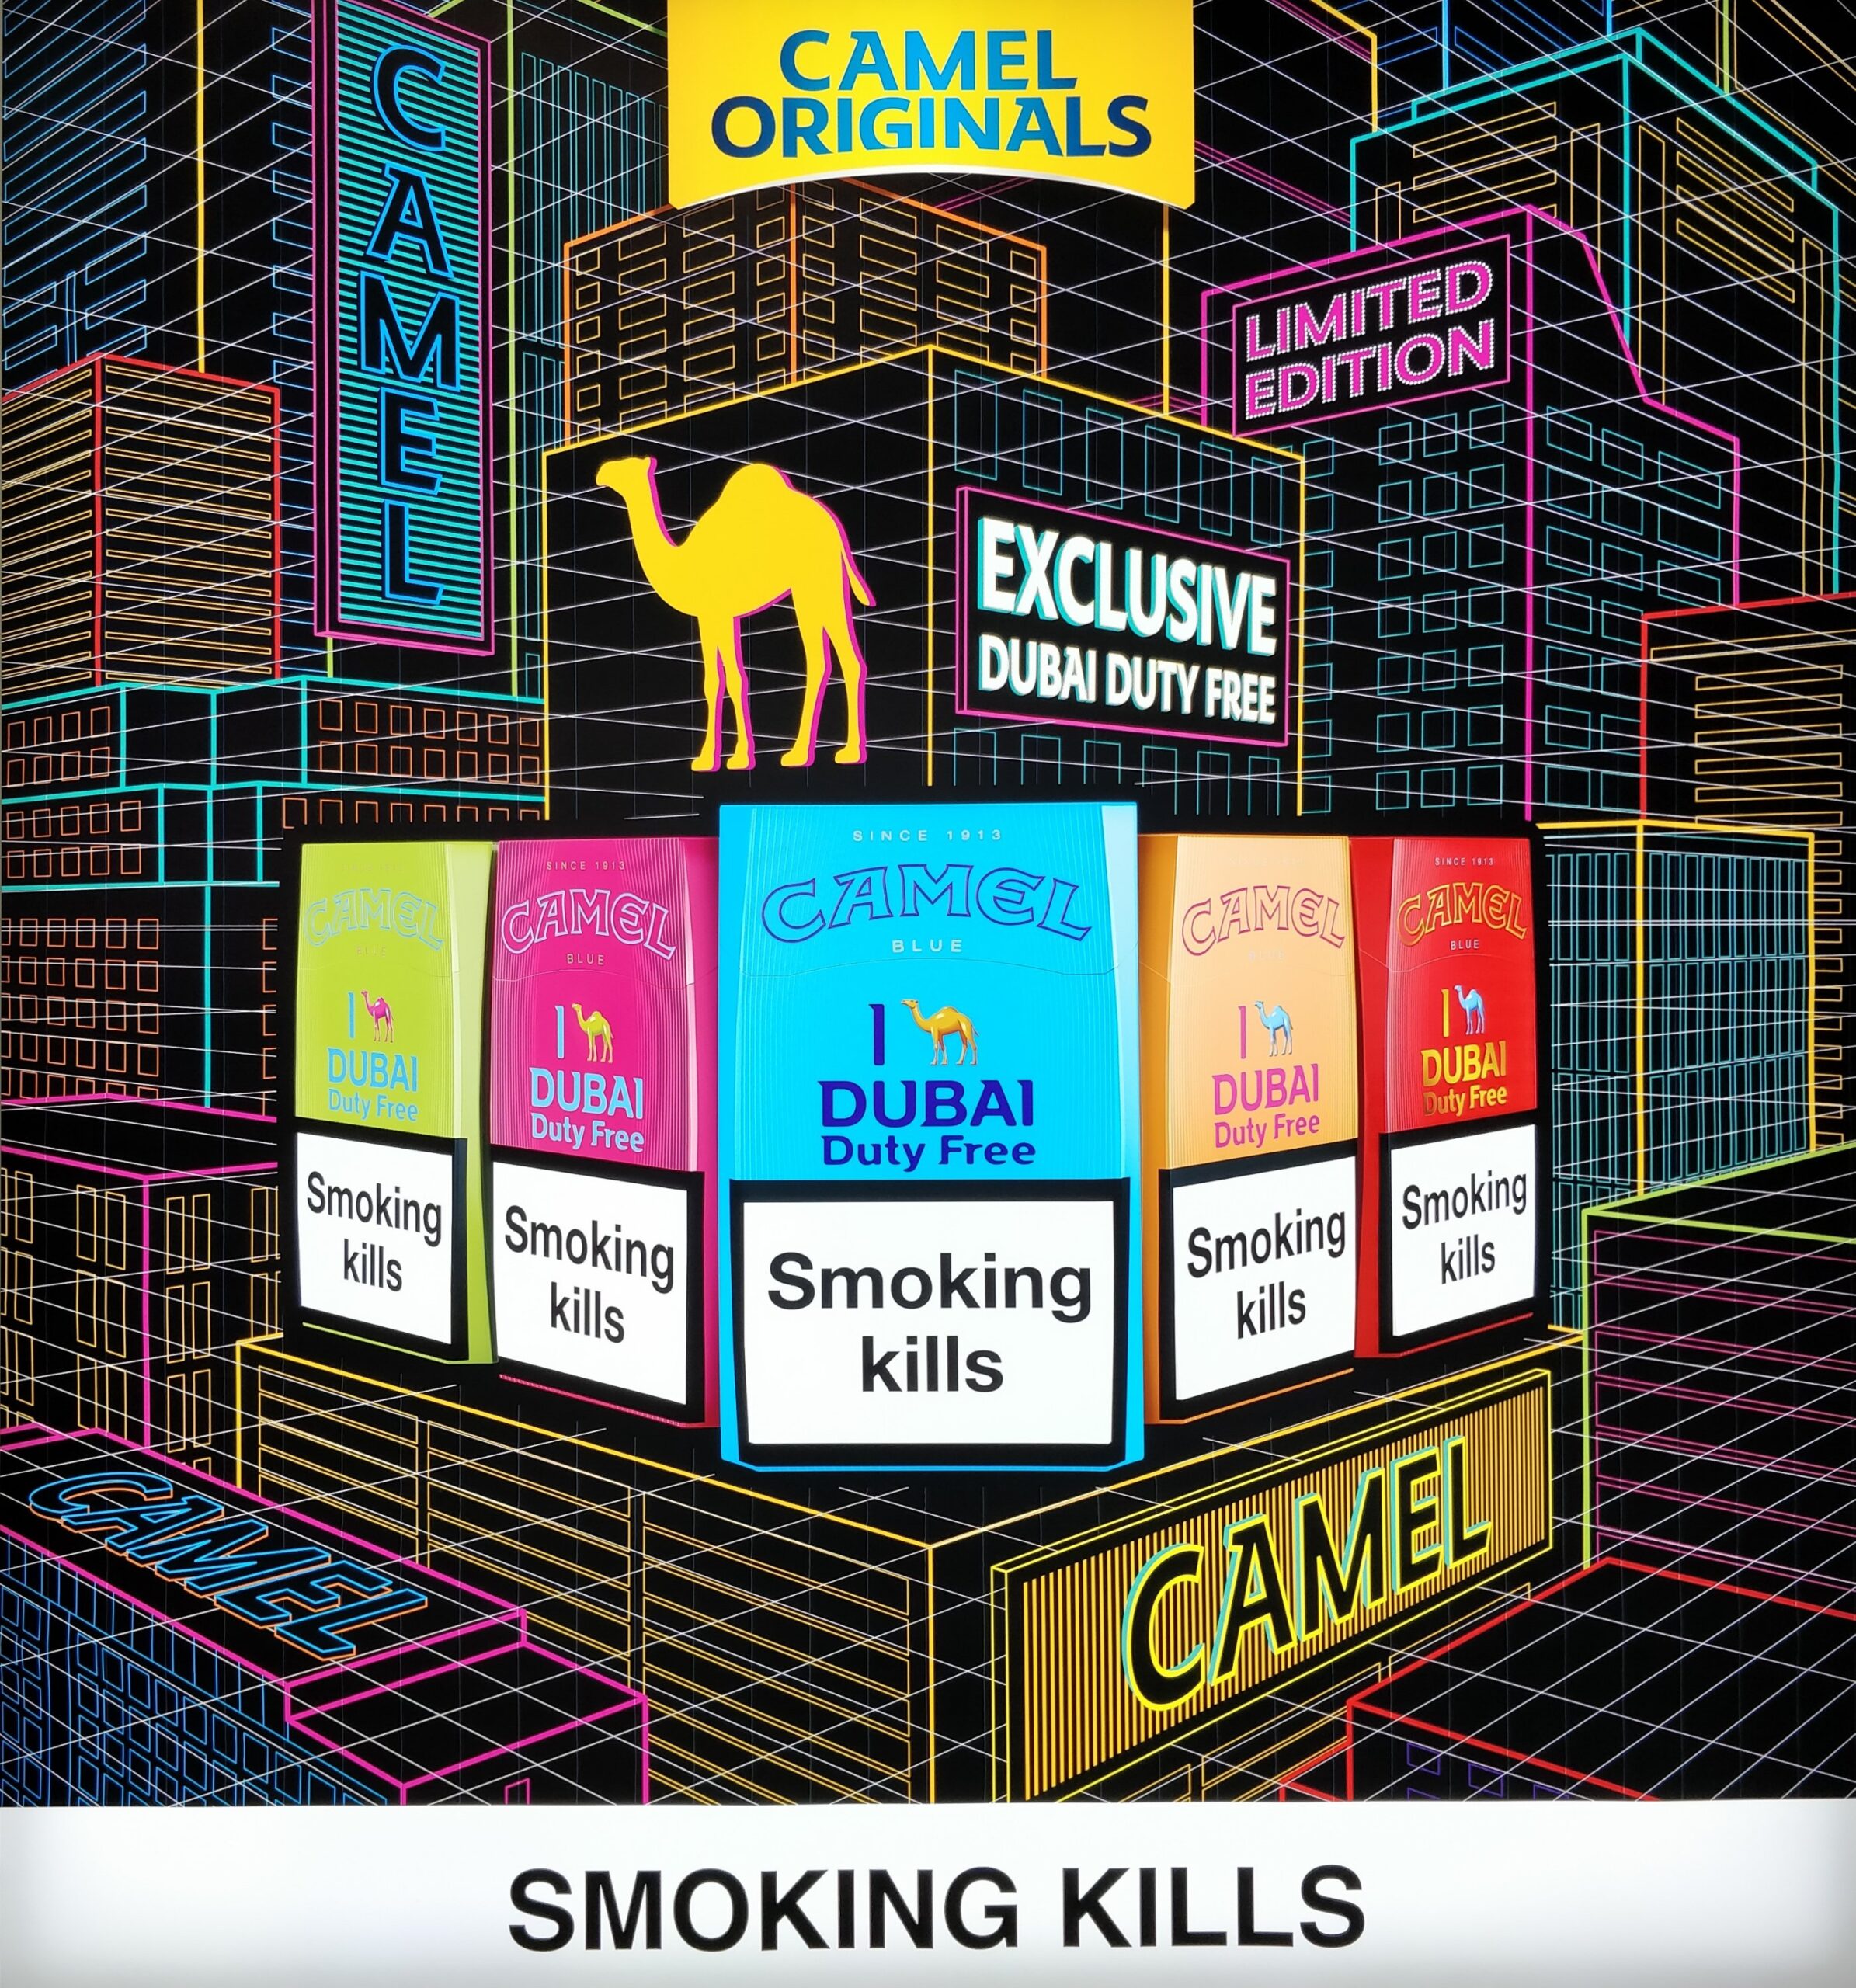 Smoking kills Dubai